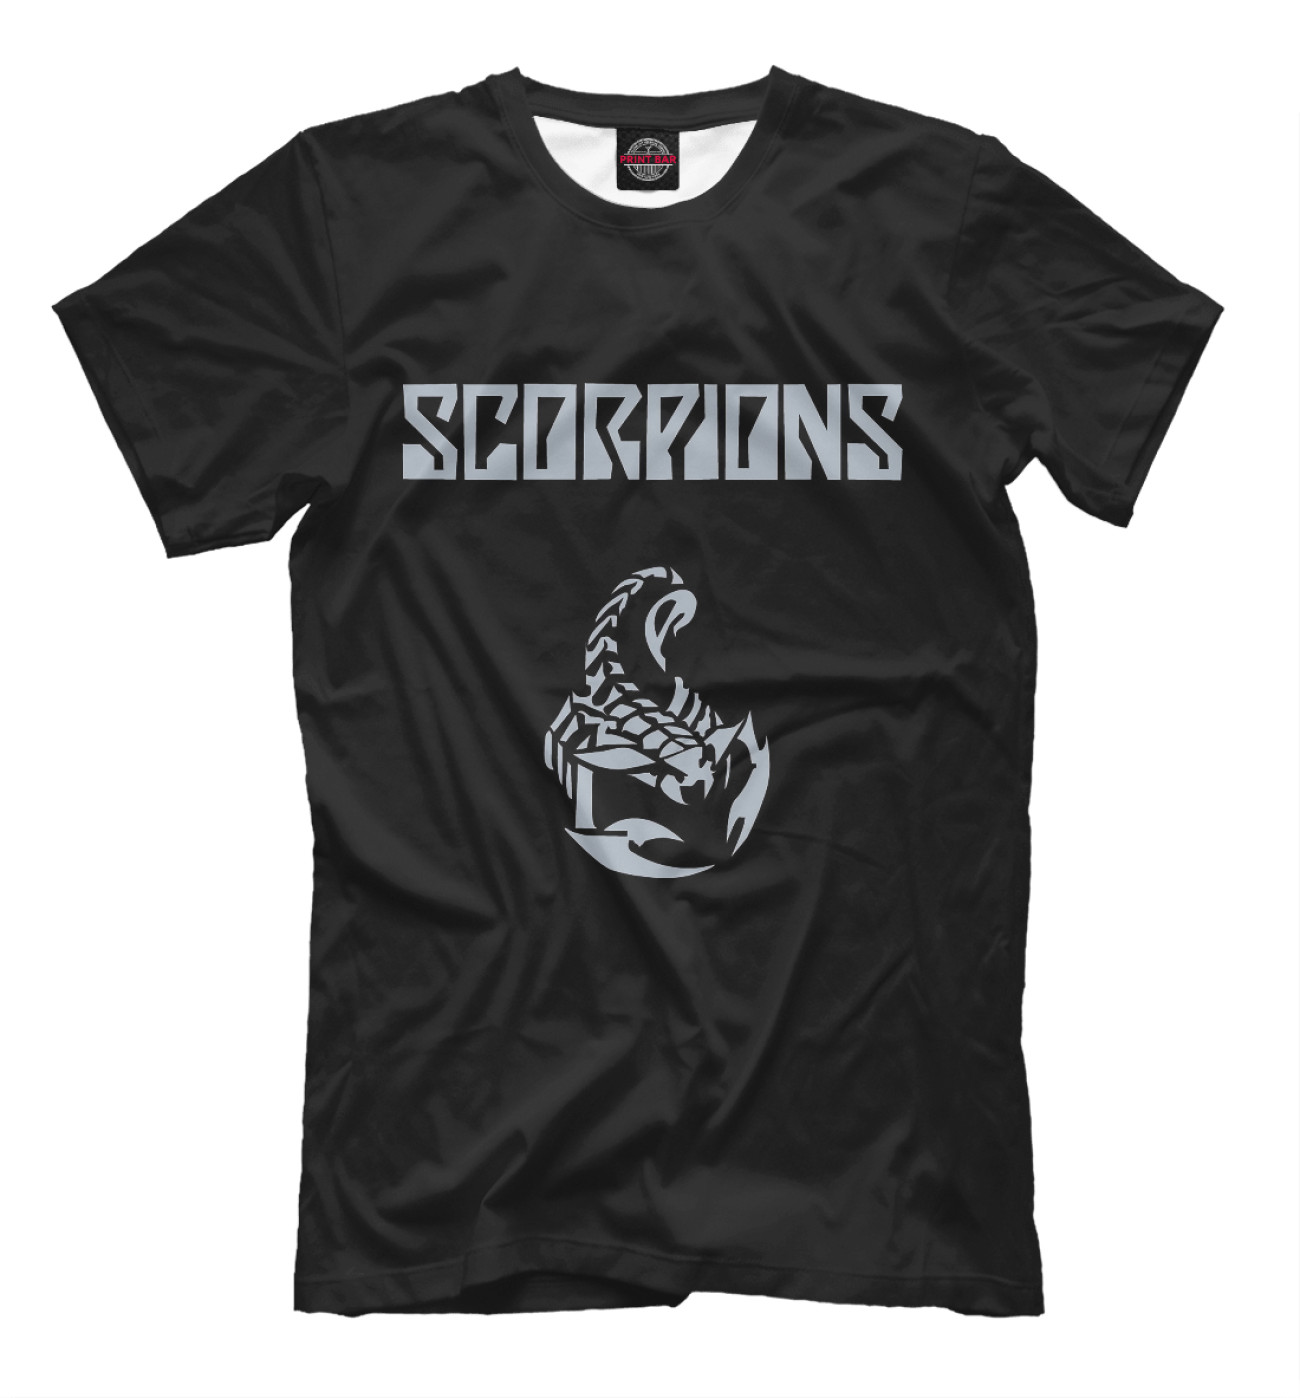 Мужская Футболка Scorpions, артикул: SPS-160671-fut-2